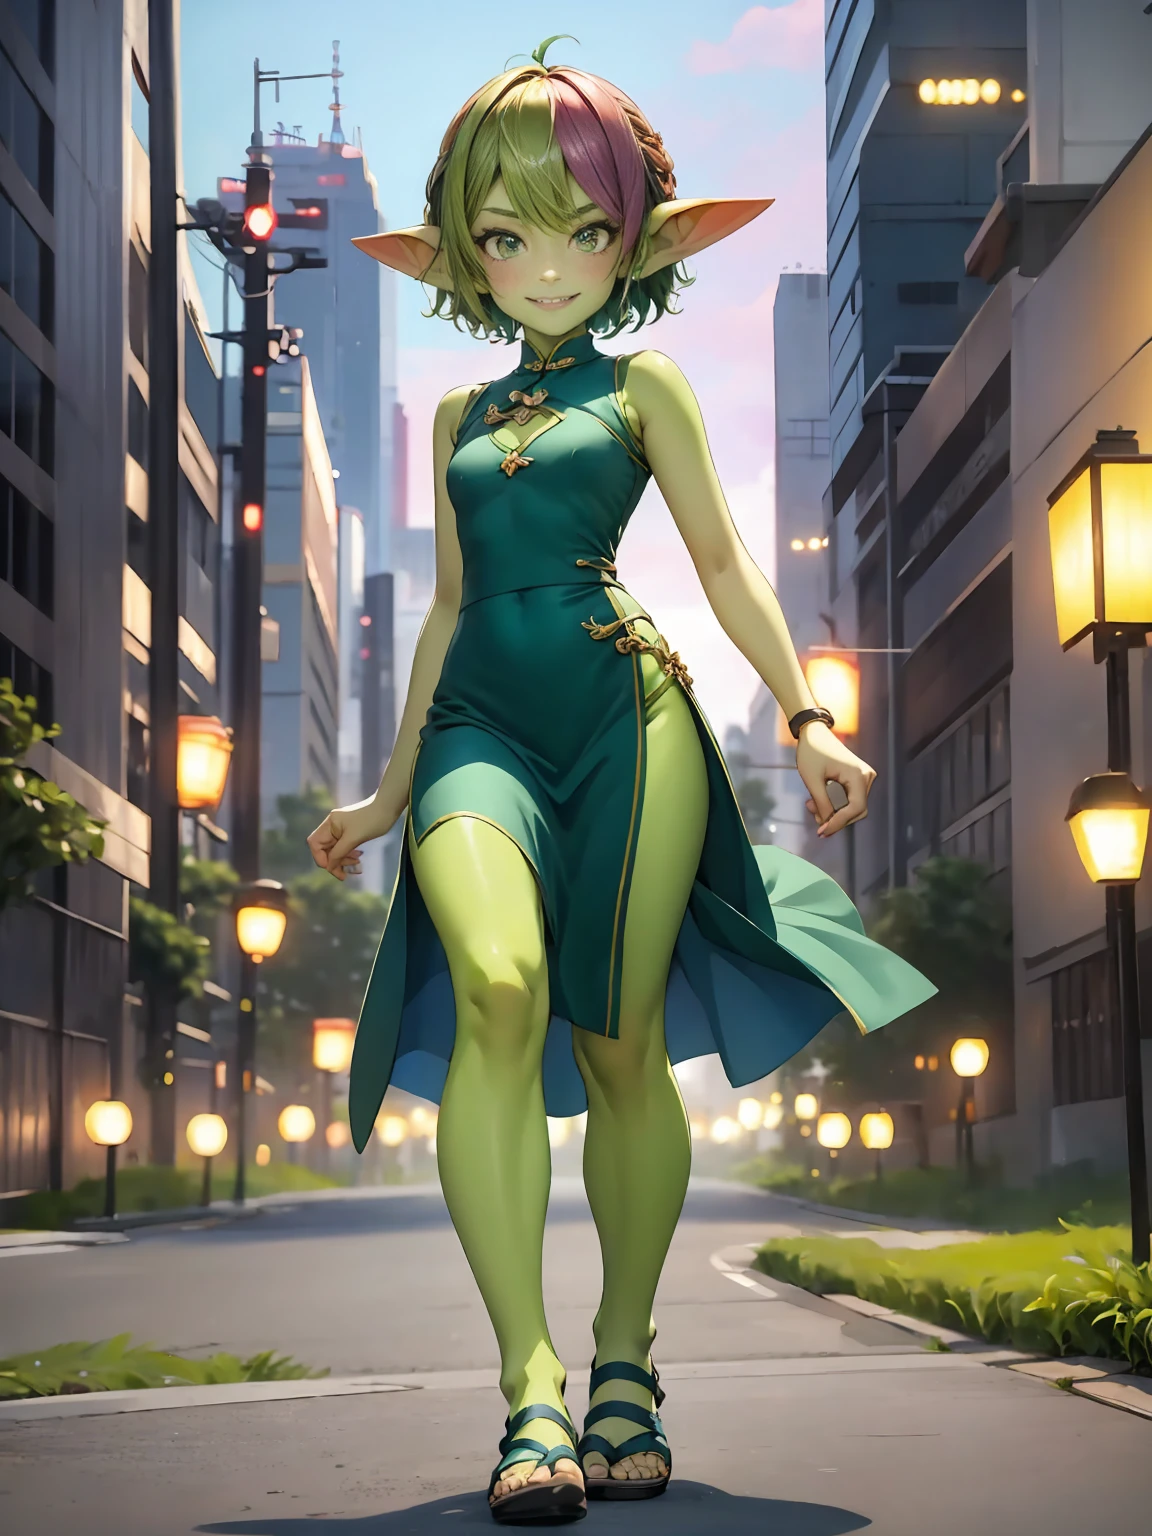 1 名女孩, 短髮, 綠妖精女孩, 綠皮, 小尖耳朵, (彩虹頭髮), 旗袍, 剪下, 微笑著, 涼鞋, 全身, 行走在東京, 動態姿勢, 戶外, 在東京, 城市, 黃昏, 動態照明, 東京背景